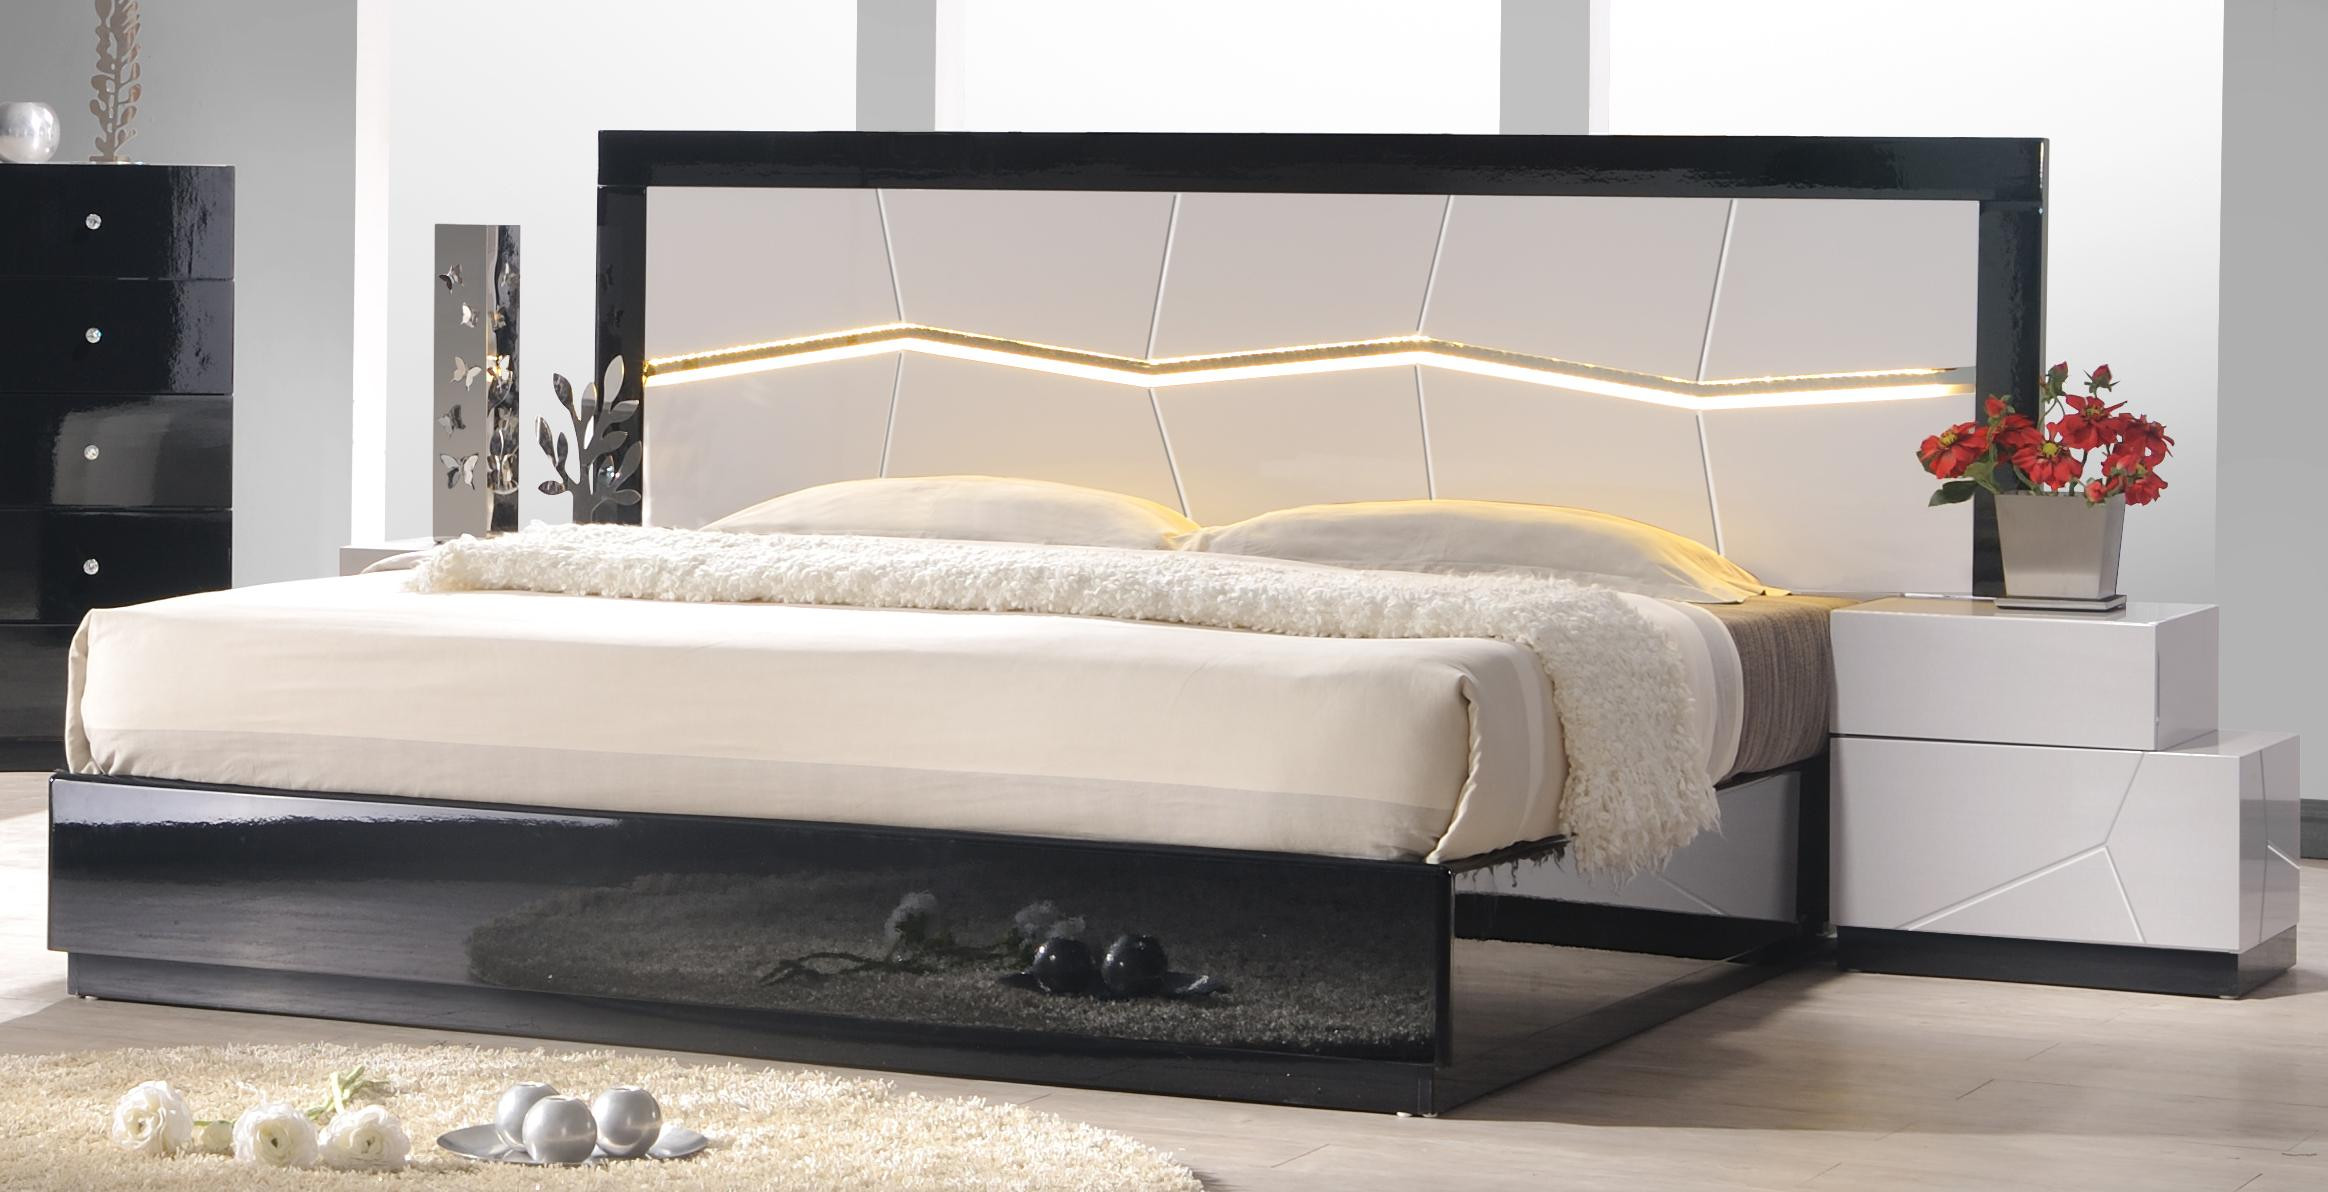 Bedroom Set With Led Lights
 LUXOR MODERN QUEEN SIZE GREY BLACK W LED LIGHT BEDROOM